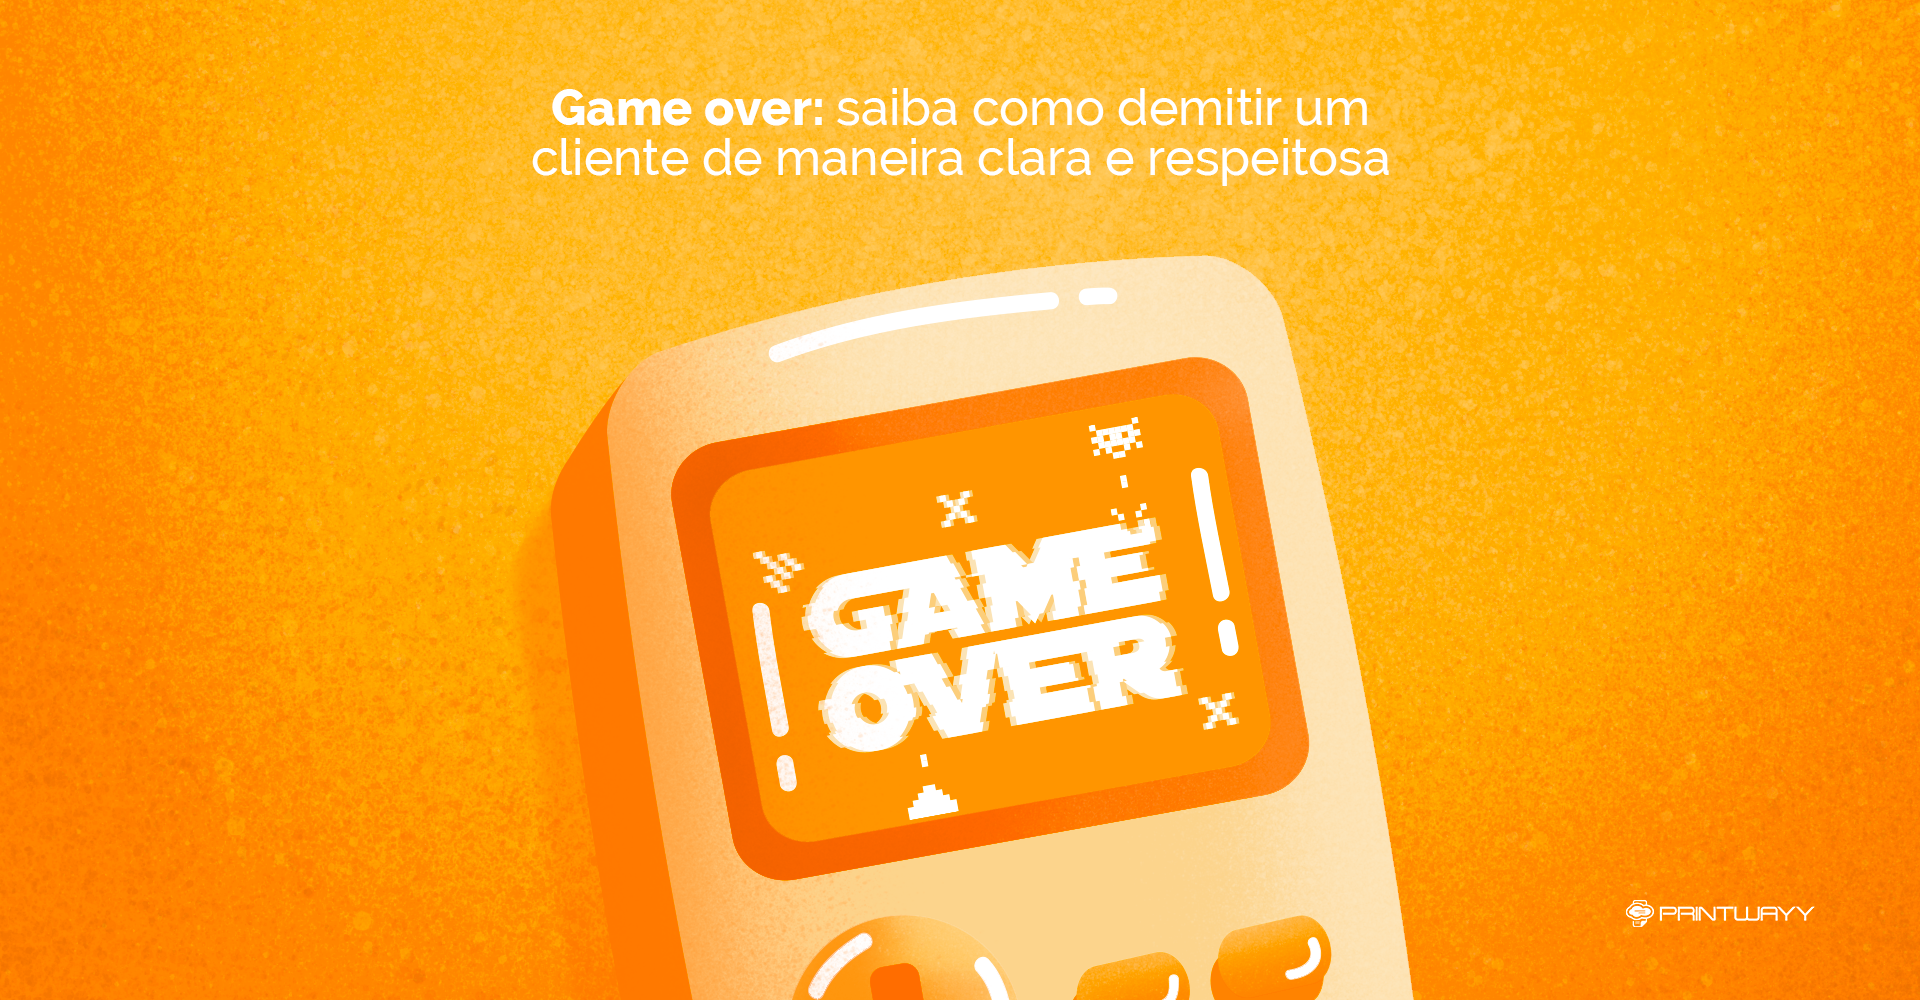 Ilustração de um videogame, com “Game Over” escrito na tela, simbolizando o final da parceria com o cliente.